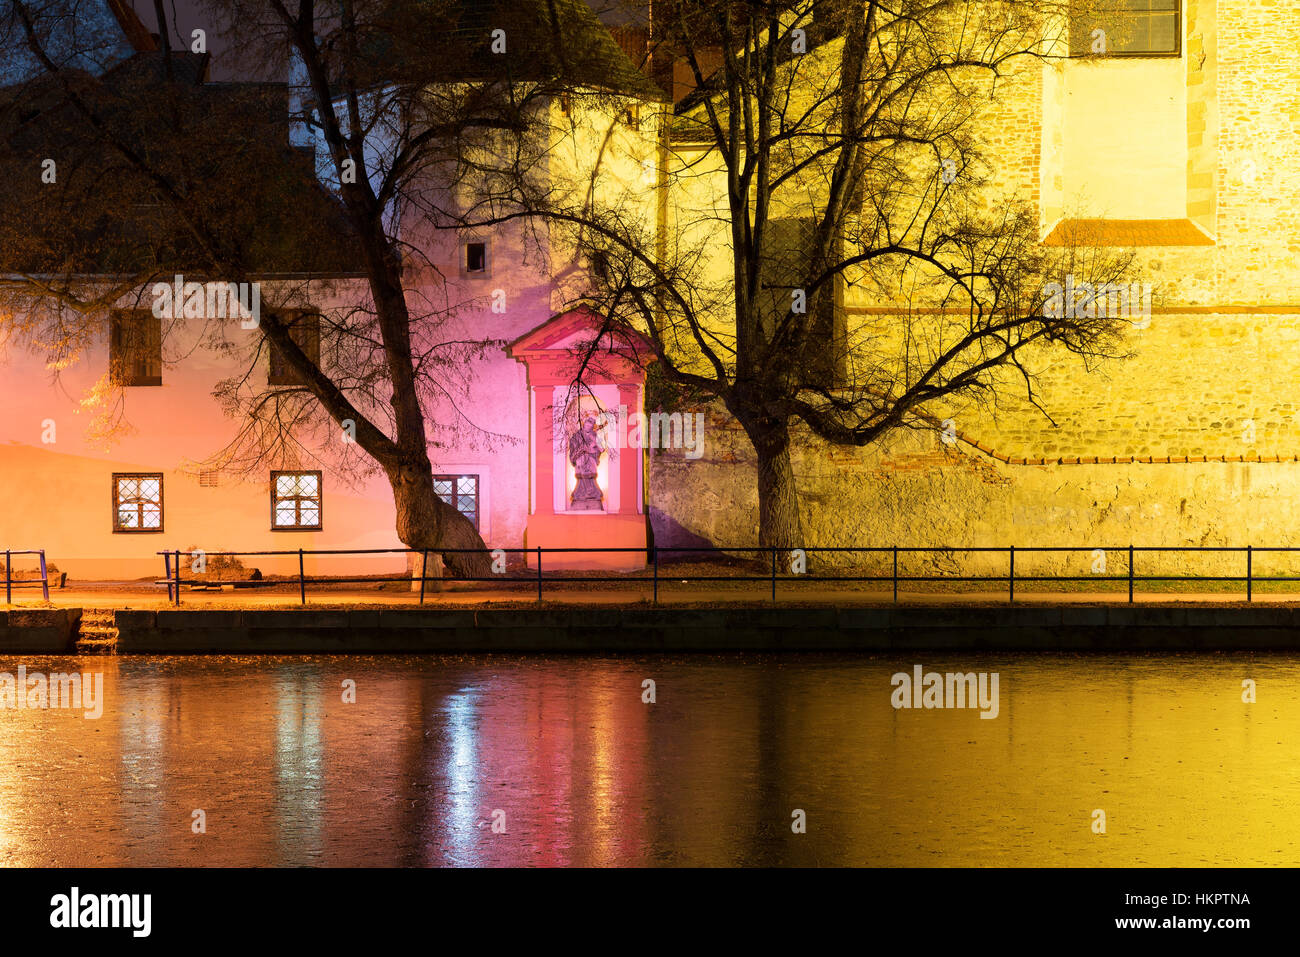 Night architecture in the city. Old church on the bank of river. České Budějovice. Stock Photo